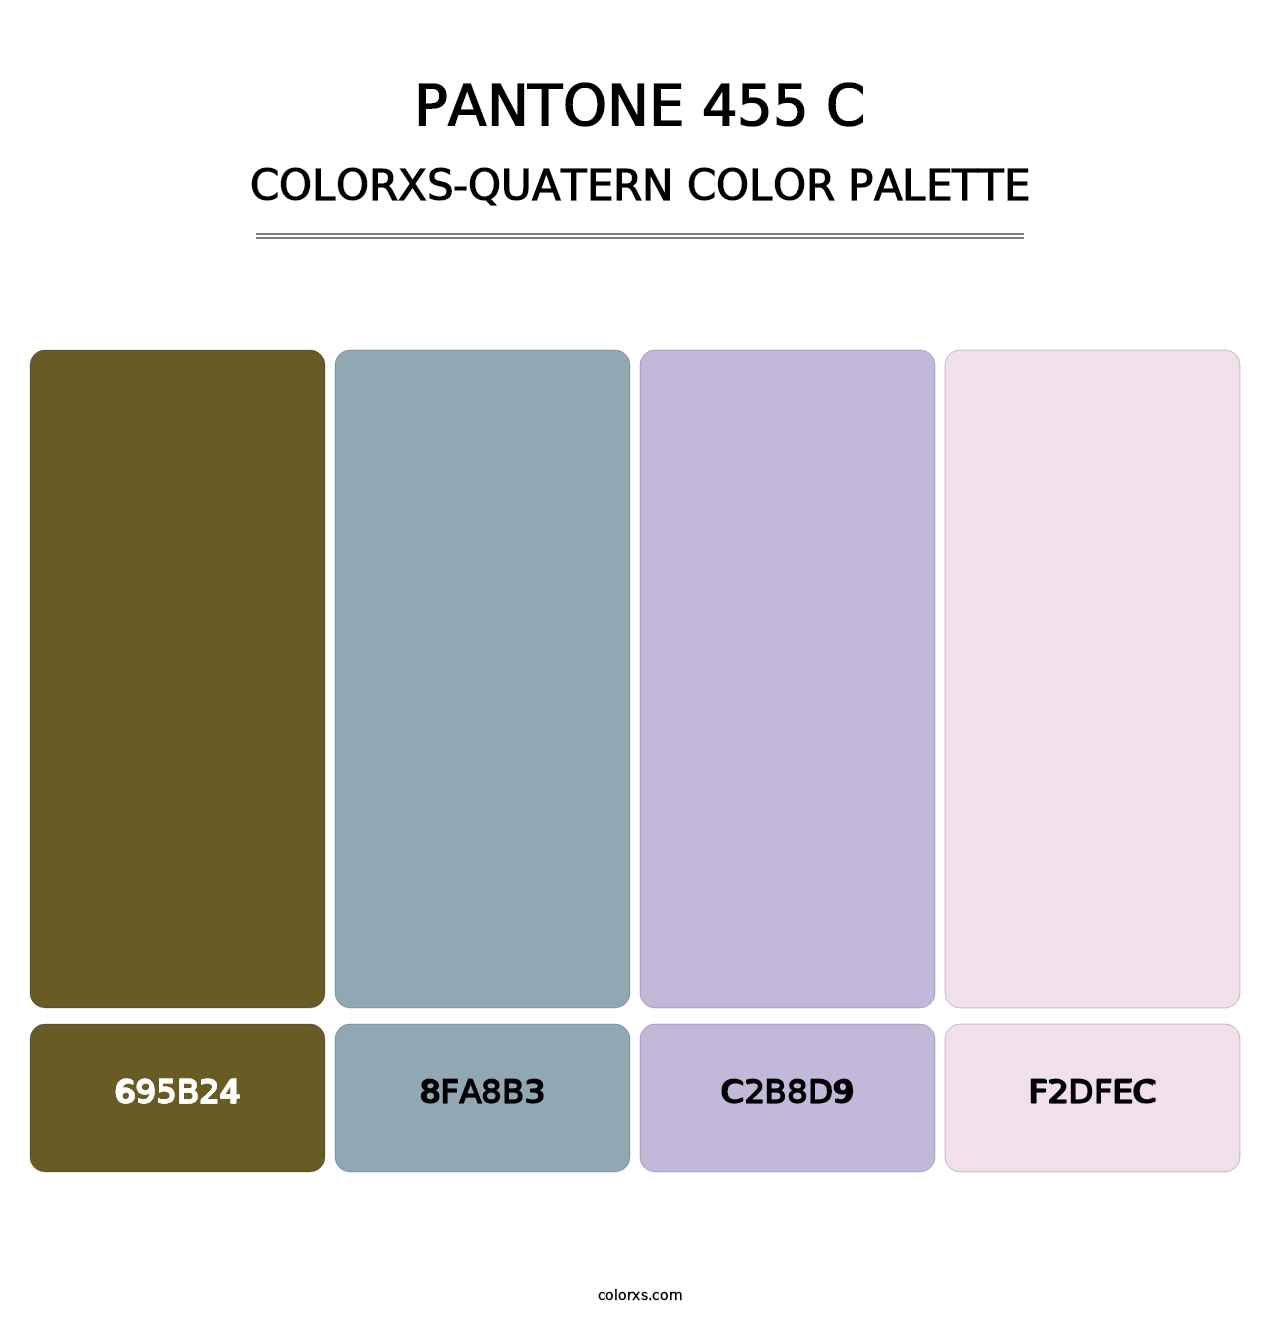 PANTONE 455 C - Colorxs Quatern Palette